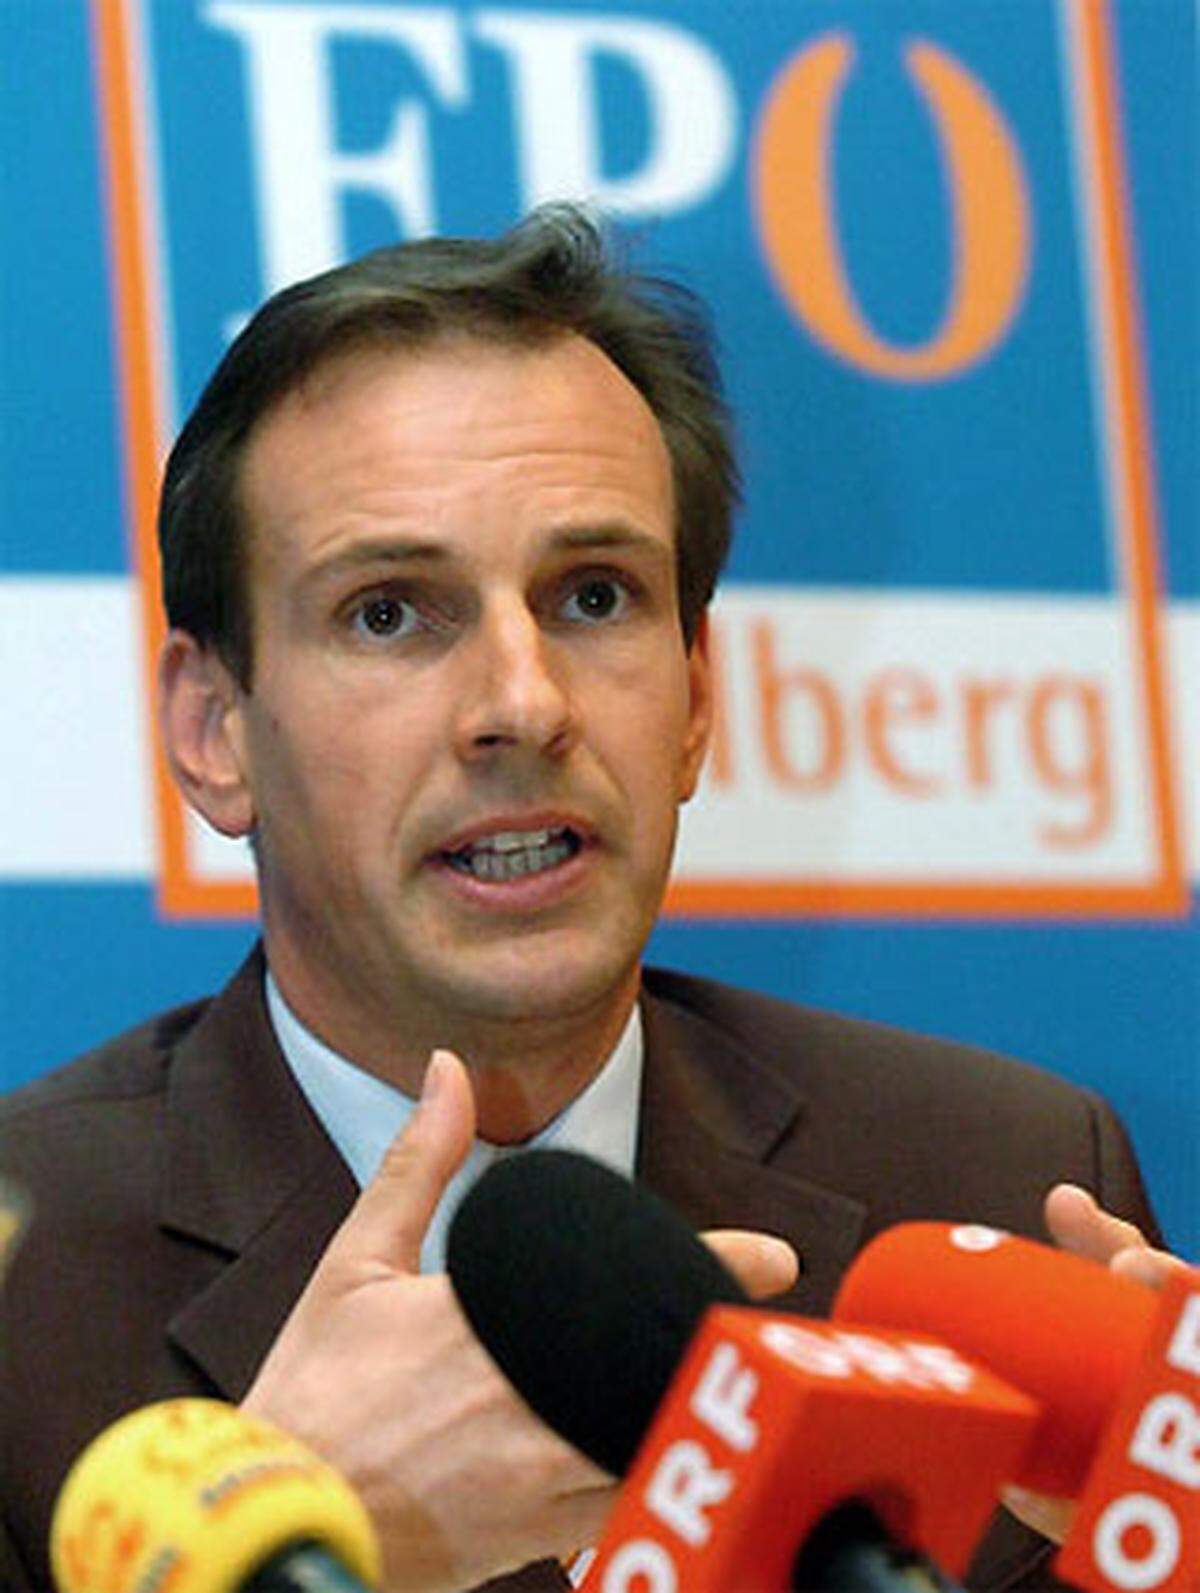 "Die Wortwahl ist übertrieben, unglücklich und krass." Kritik setzt es auch aus den eigenen Reihen. Vorarlbergs FP-Landesparteiobmann Dieter Egger ist mit den Worten seiner Parteikollegin nicht einverstanden.